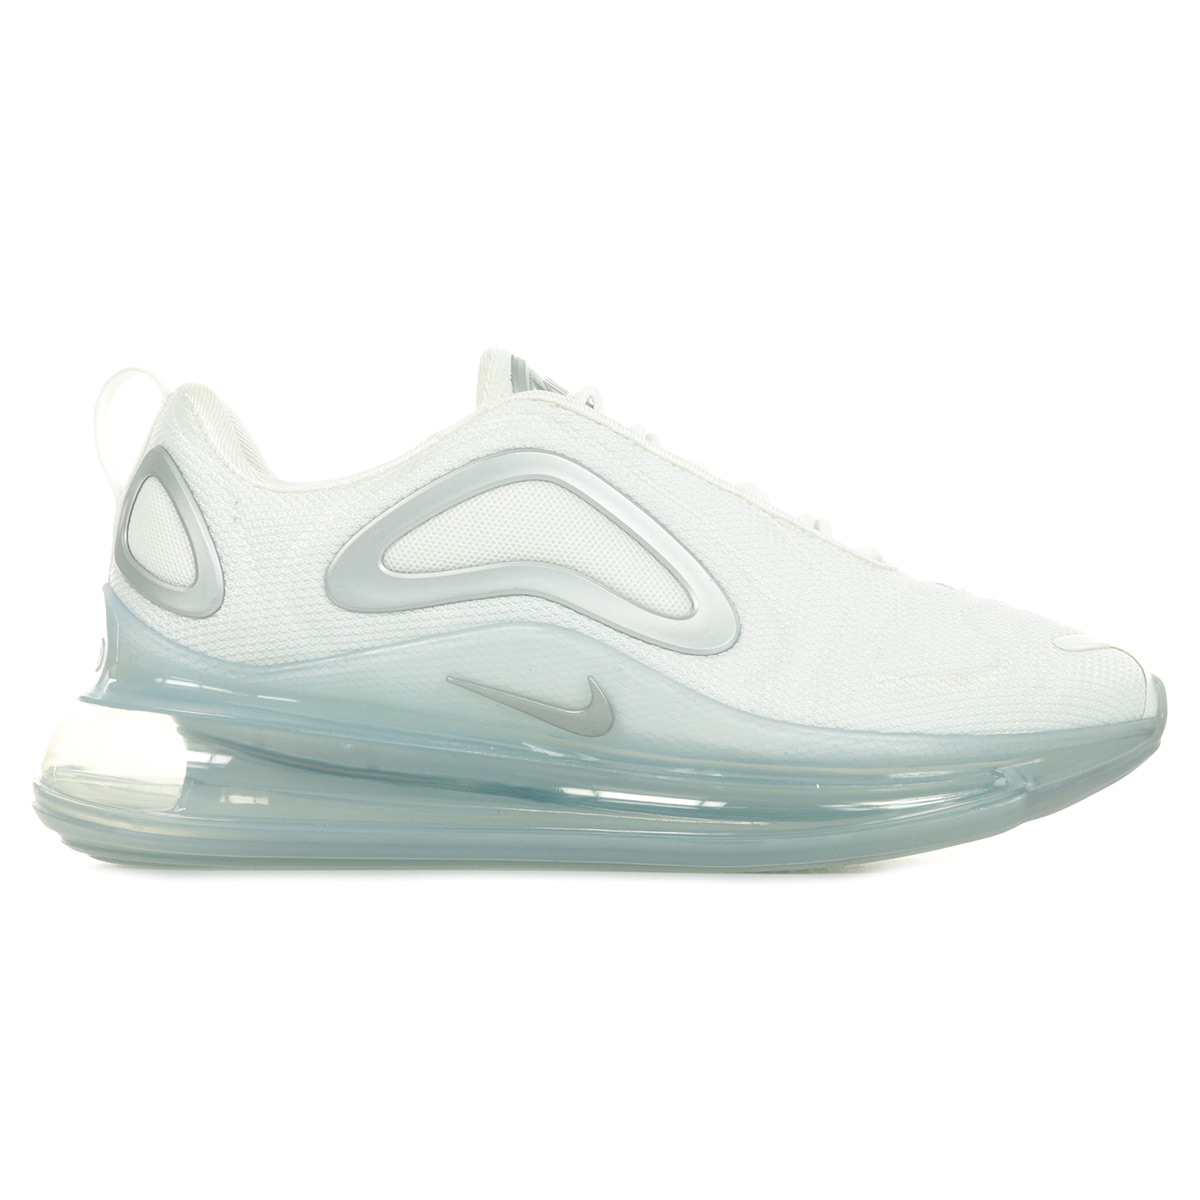 Détails sur Chaussures Baskets Nike femme Air Max 720 Wn's taille Blanc  Blanche Textile